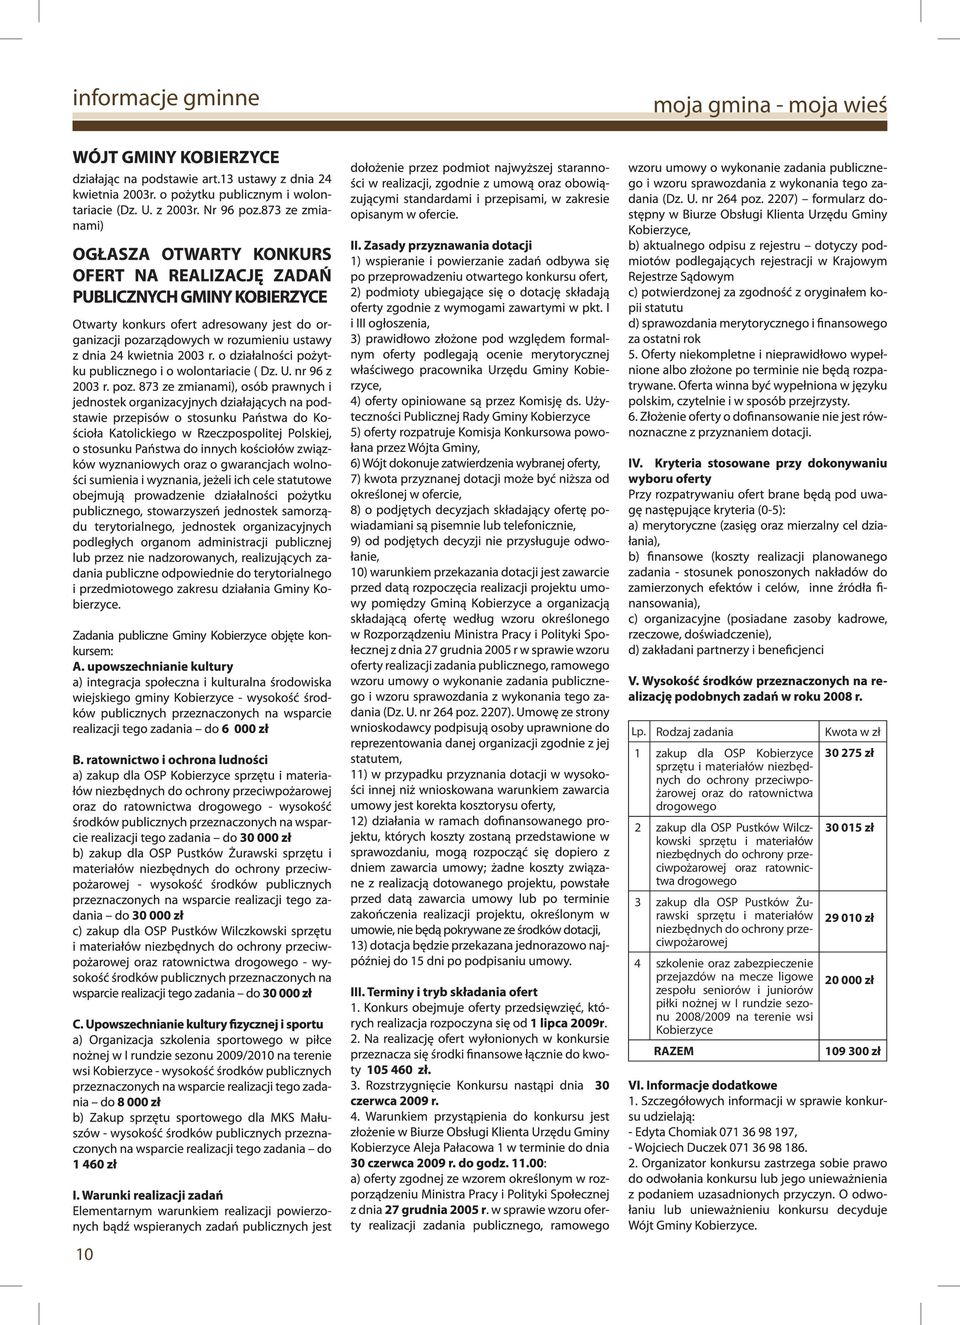 Pustków Wilczkowski sprzętu i materiałów niezbędnych do ochrony przeciwpożarowej oraz ratownictwa drogowego 3 zakup dla OSP Pustków Żurawski sprzętu i